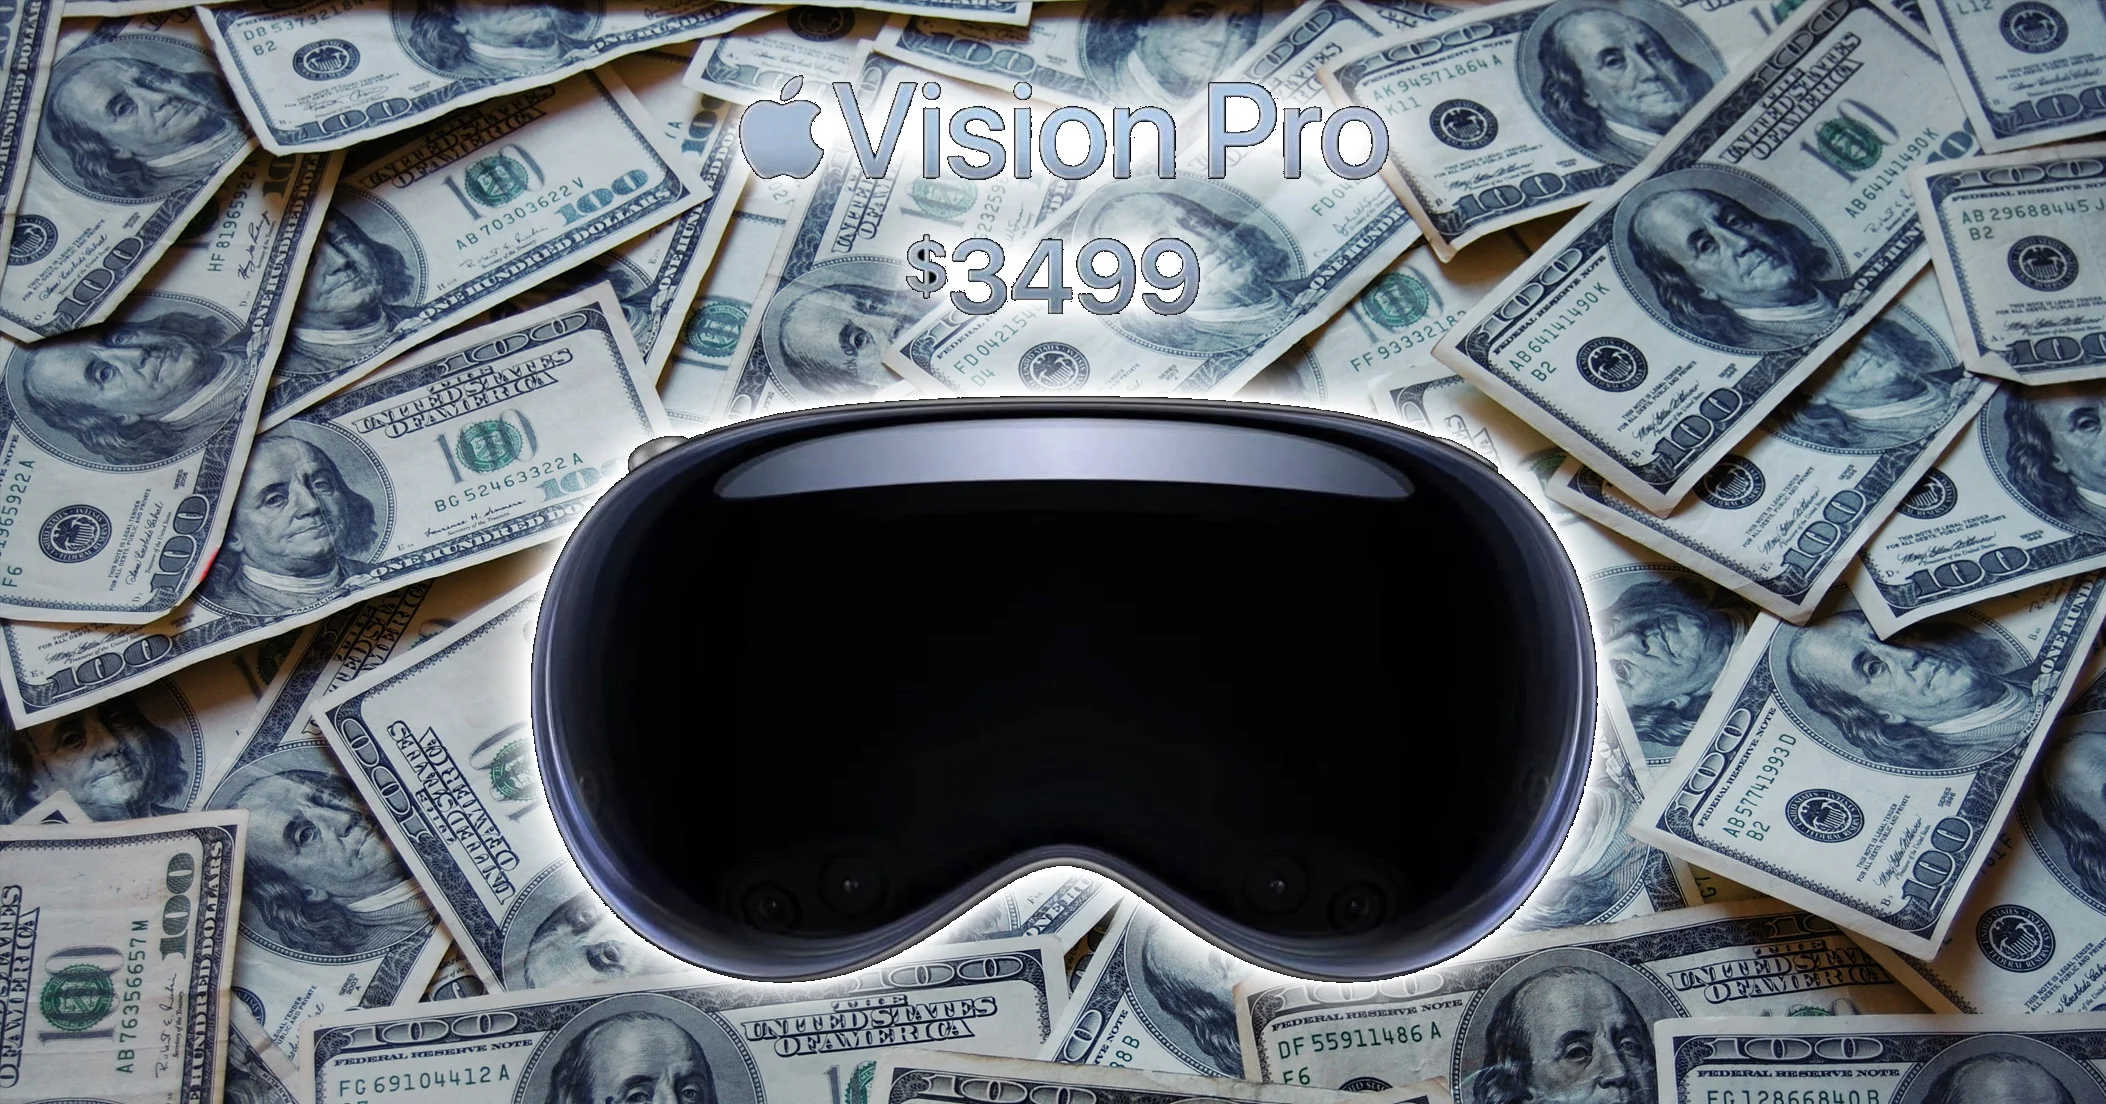 Le Vision Pro d’Apple peut être aussi performant qu’il veut, à 3 500 dollars, ce n’est pas une “révolution”